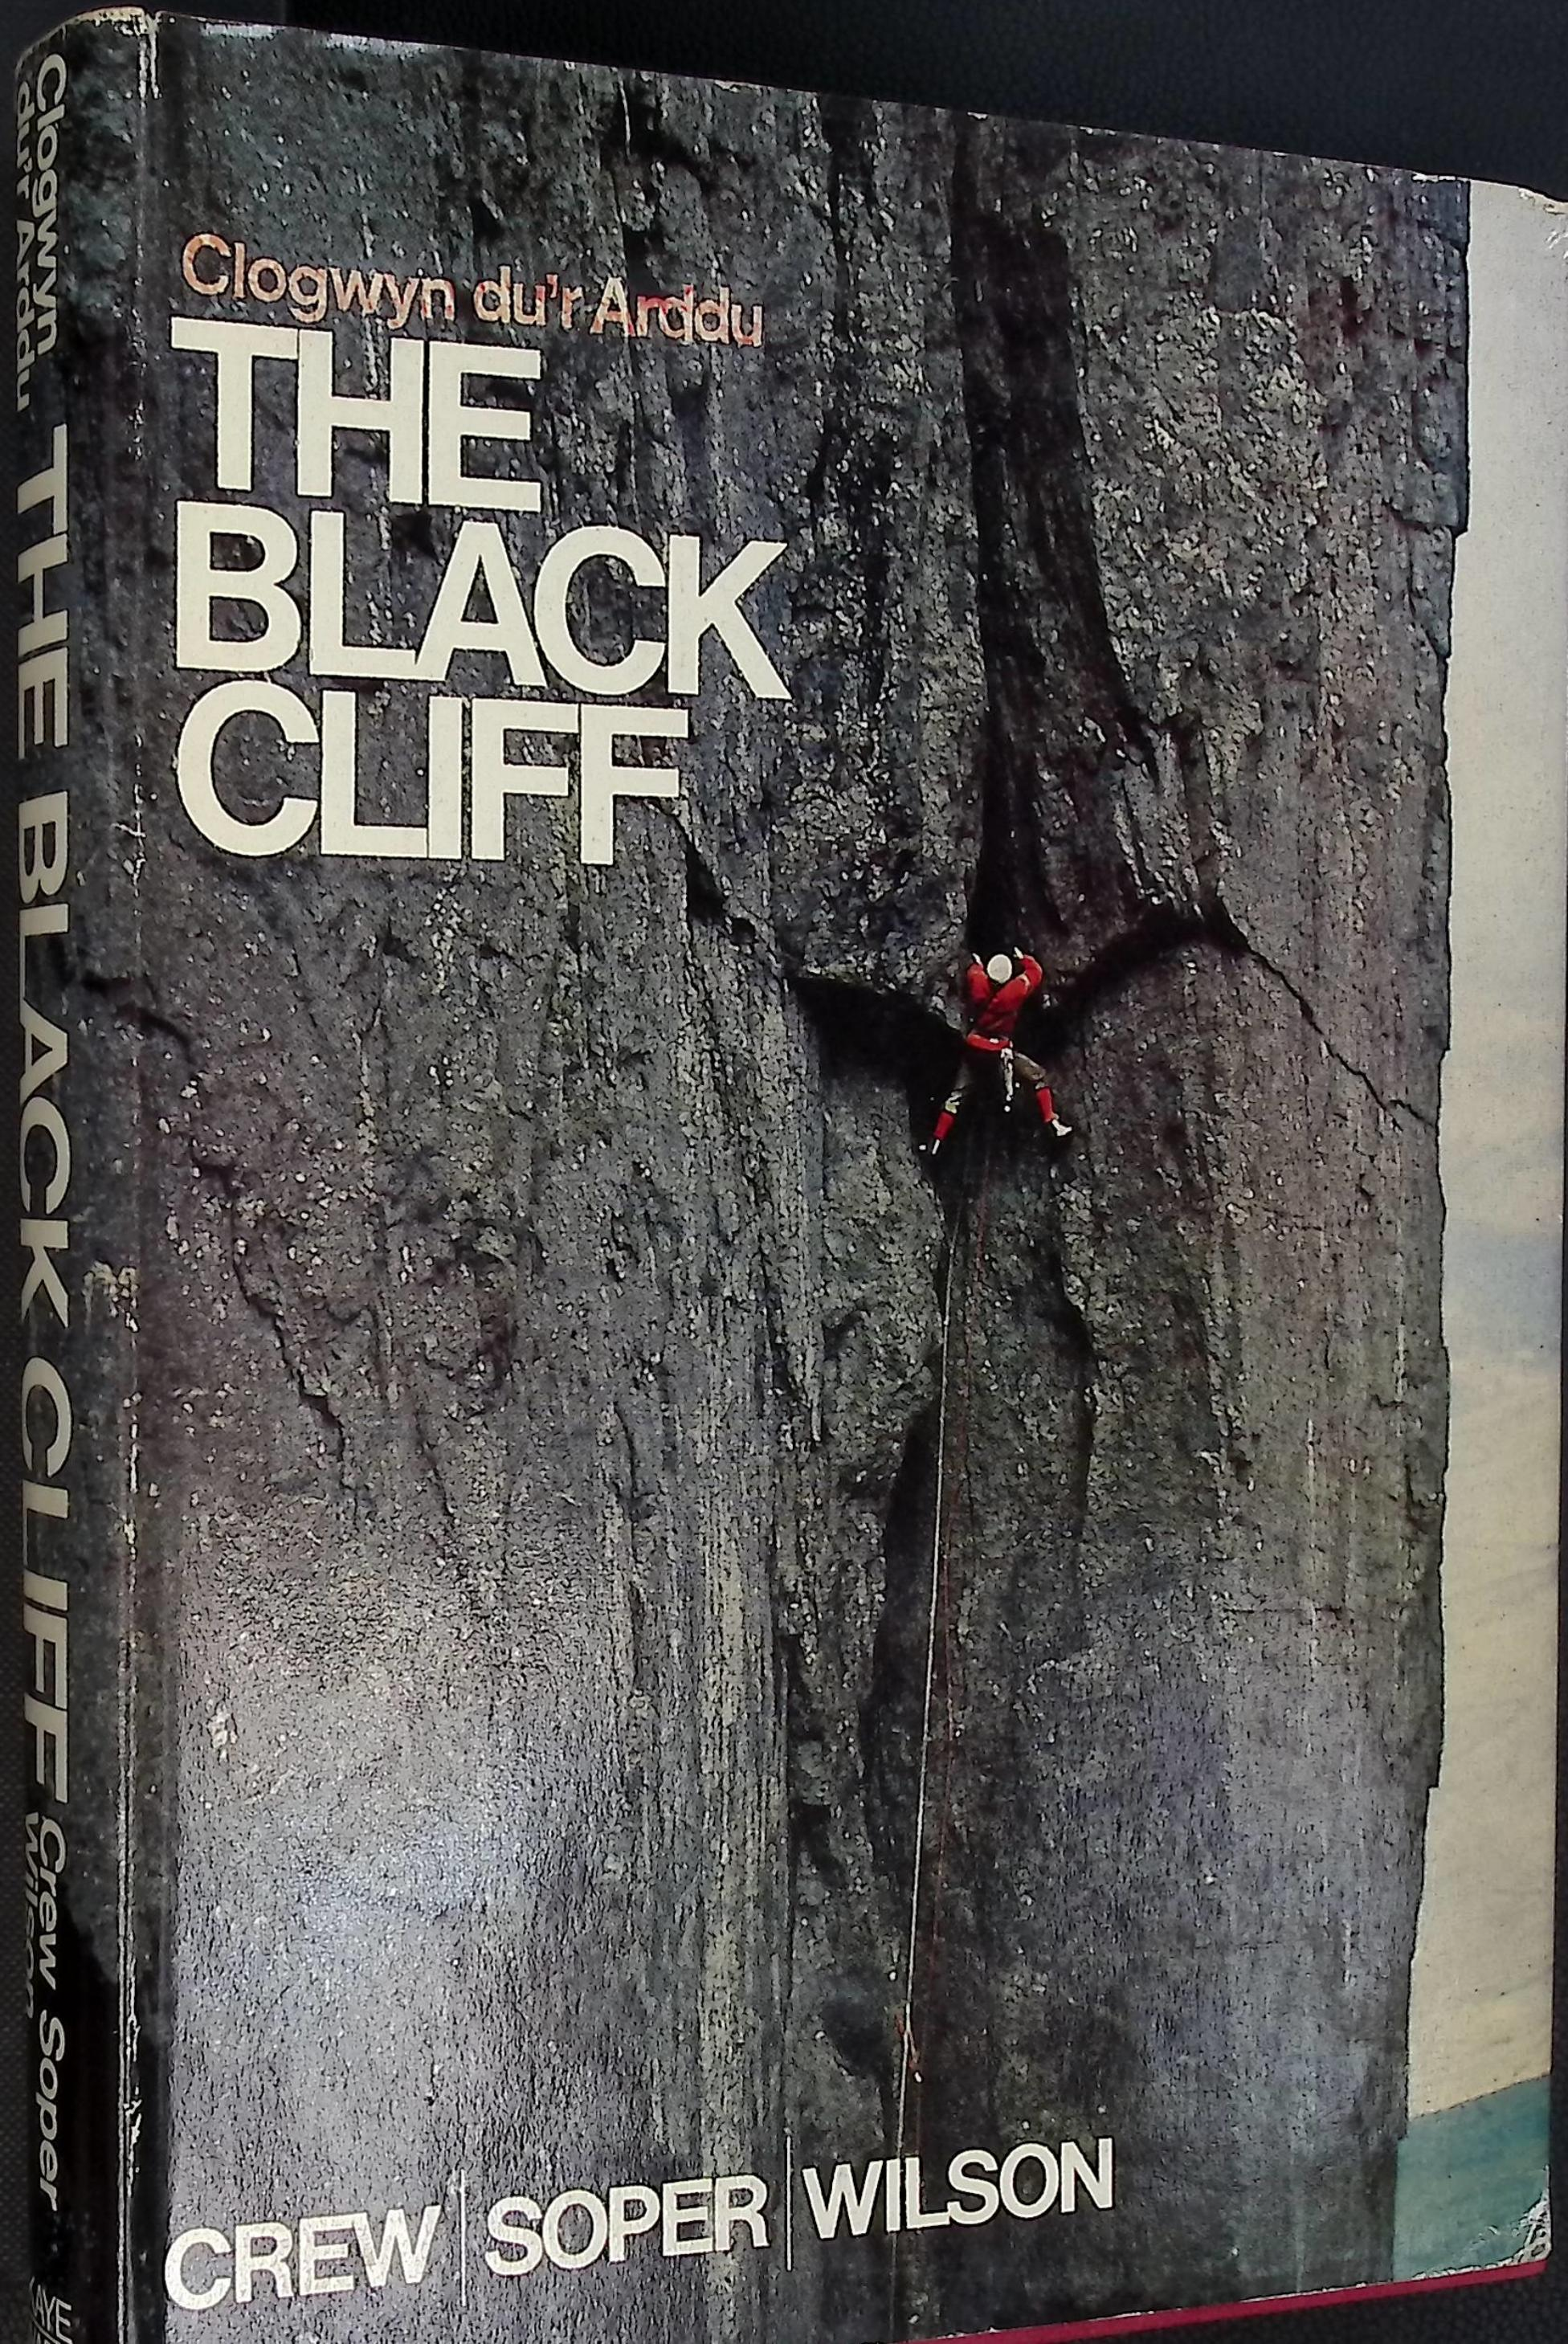 The Black Cliff. the History of Rock-climbing on Clogwyn du'r Arddu